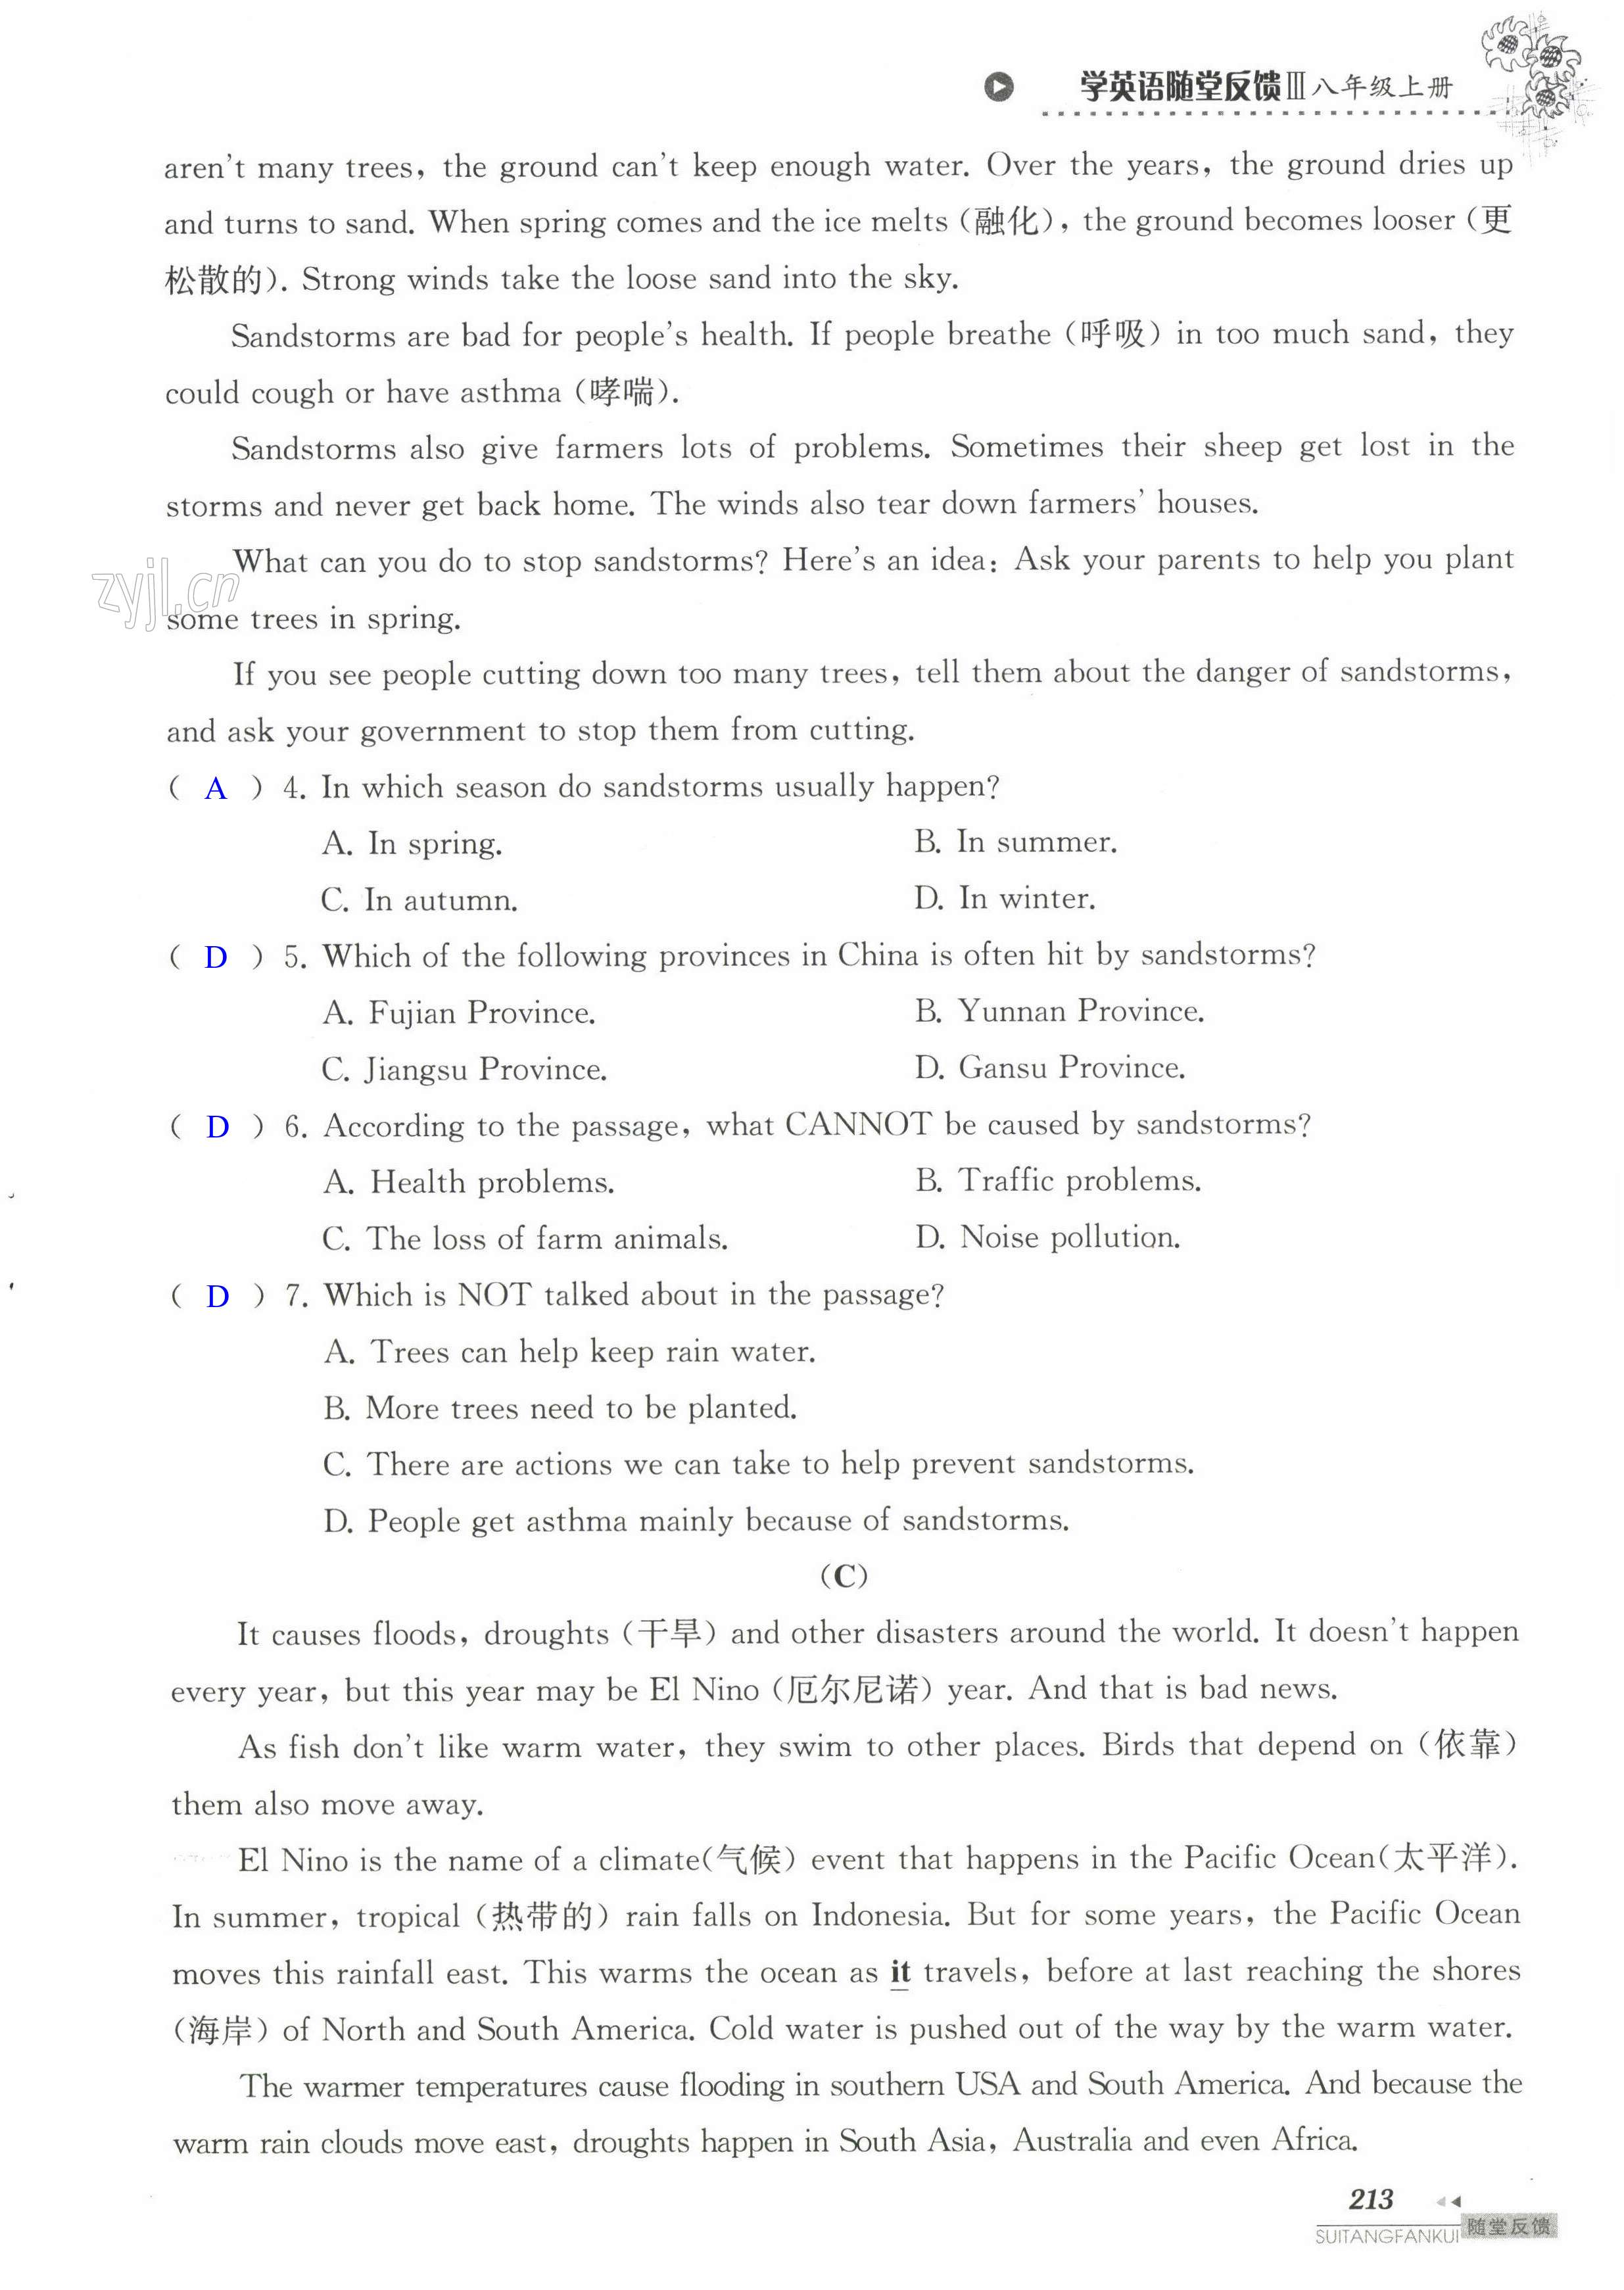 单元综合测试卷 Test for Unit 8 of 8A - 第213页